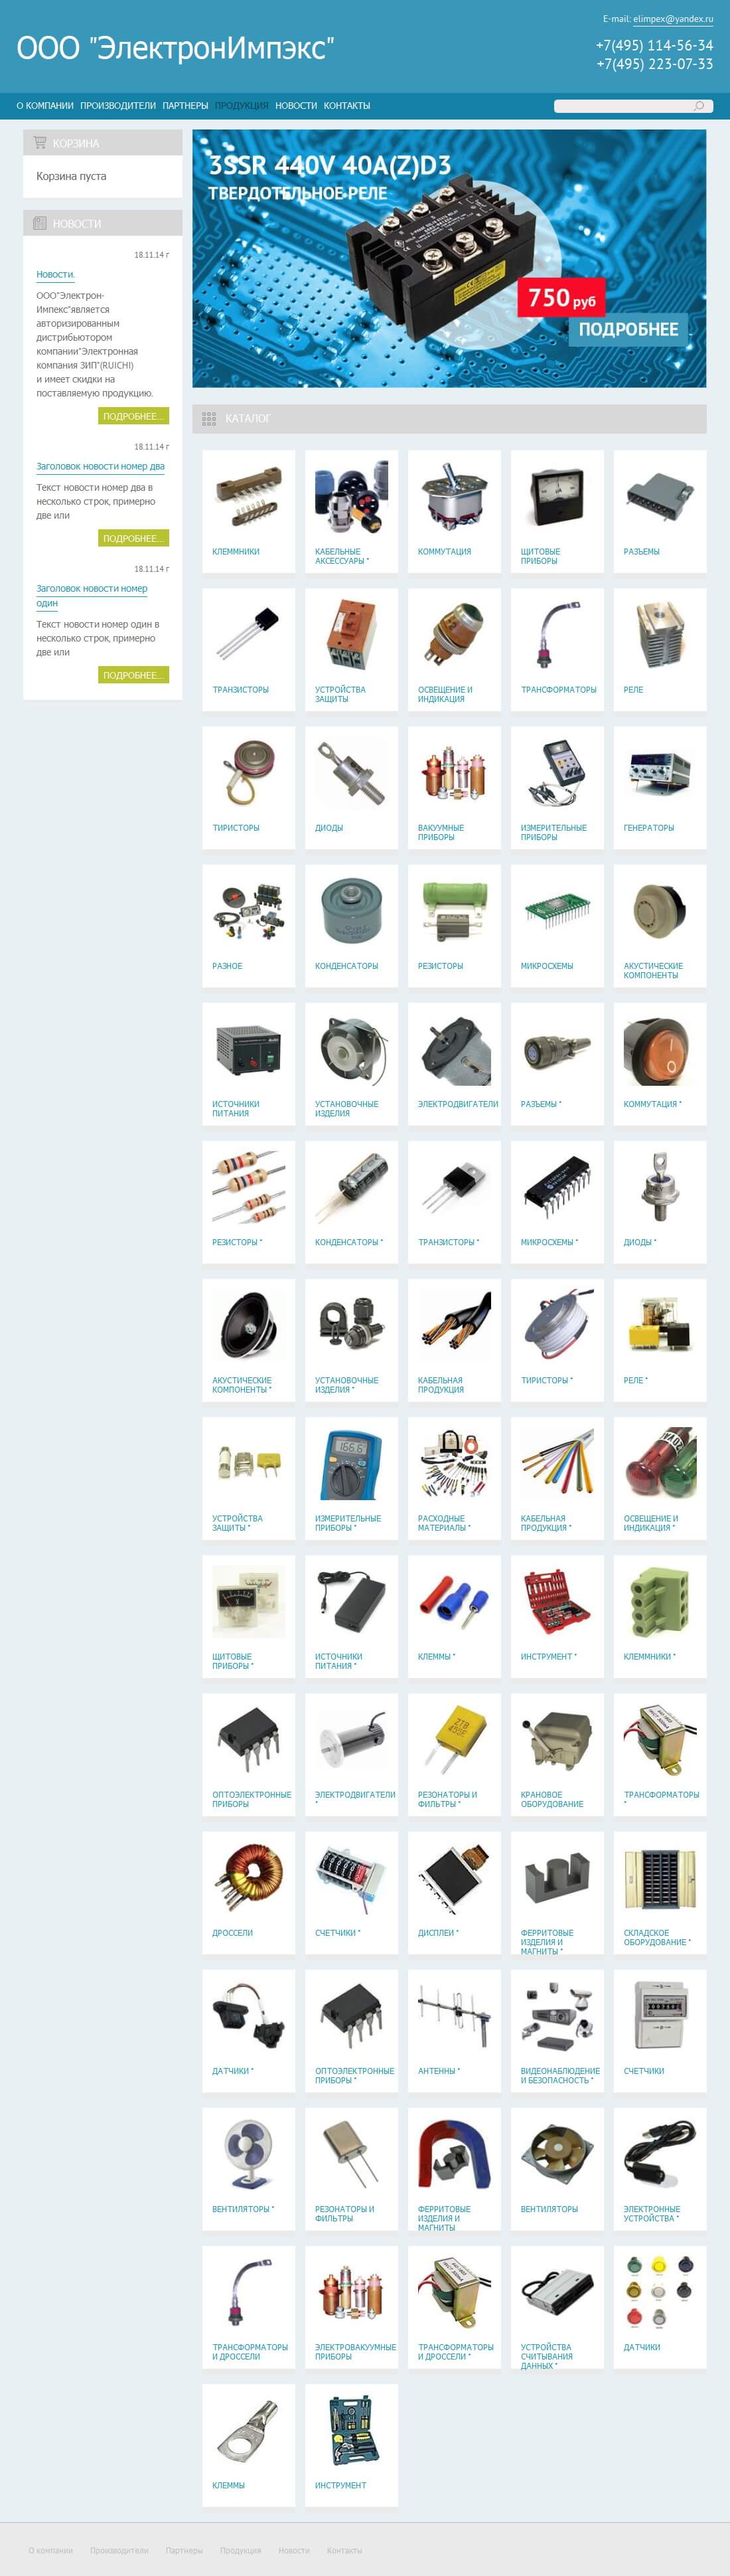 Интернет-магазин электронных компонентов, оборудования, приборов, расходных материалов для электроники ООО ЭлектронИмпэкс